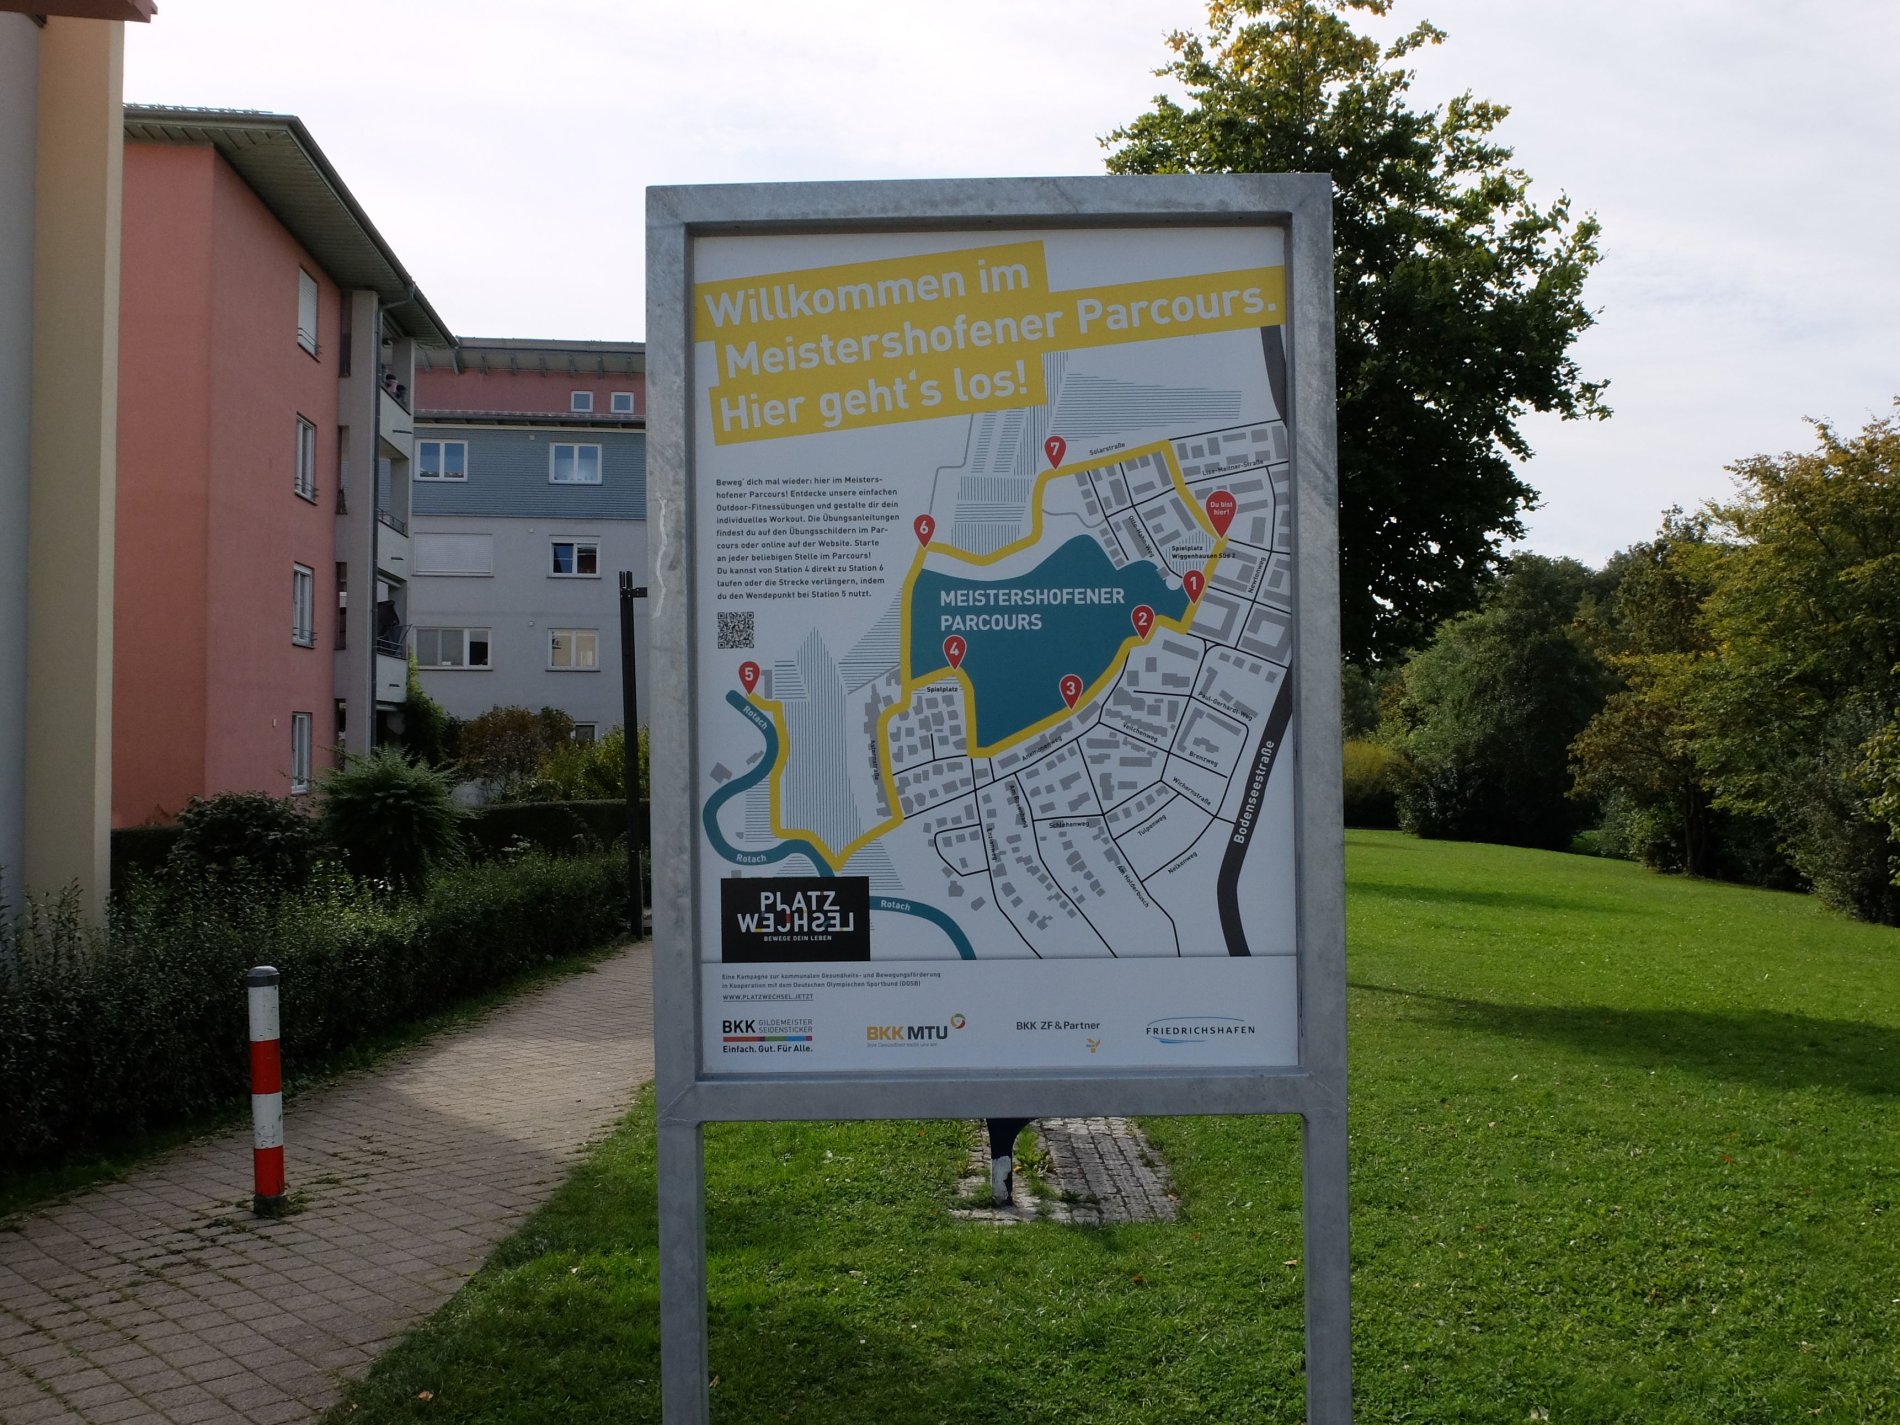 Bewegungsparcour Friedrichshafen: Meistershofener Parcours Wegbeschreibung